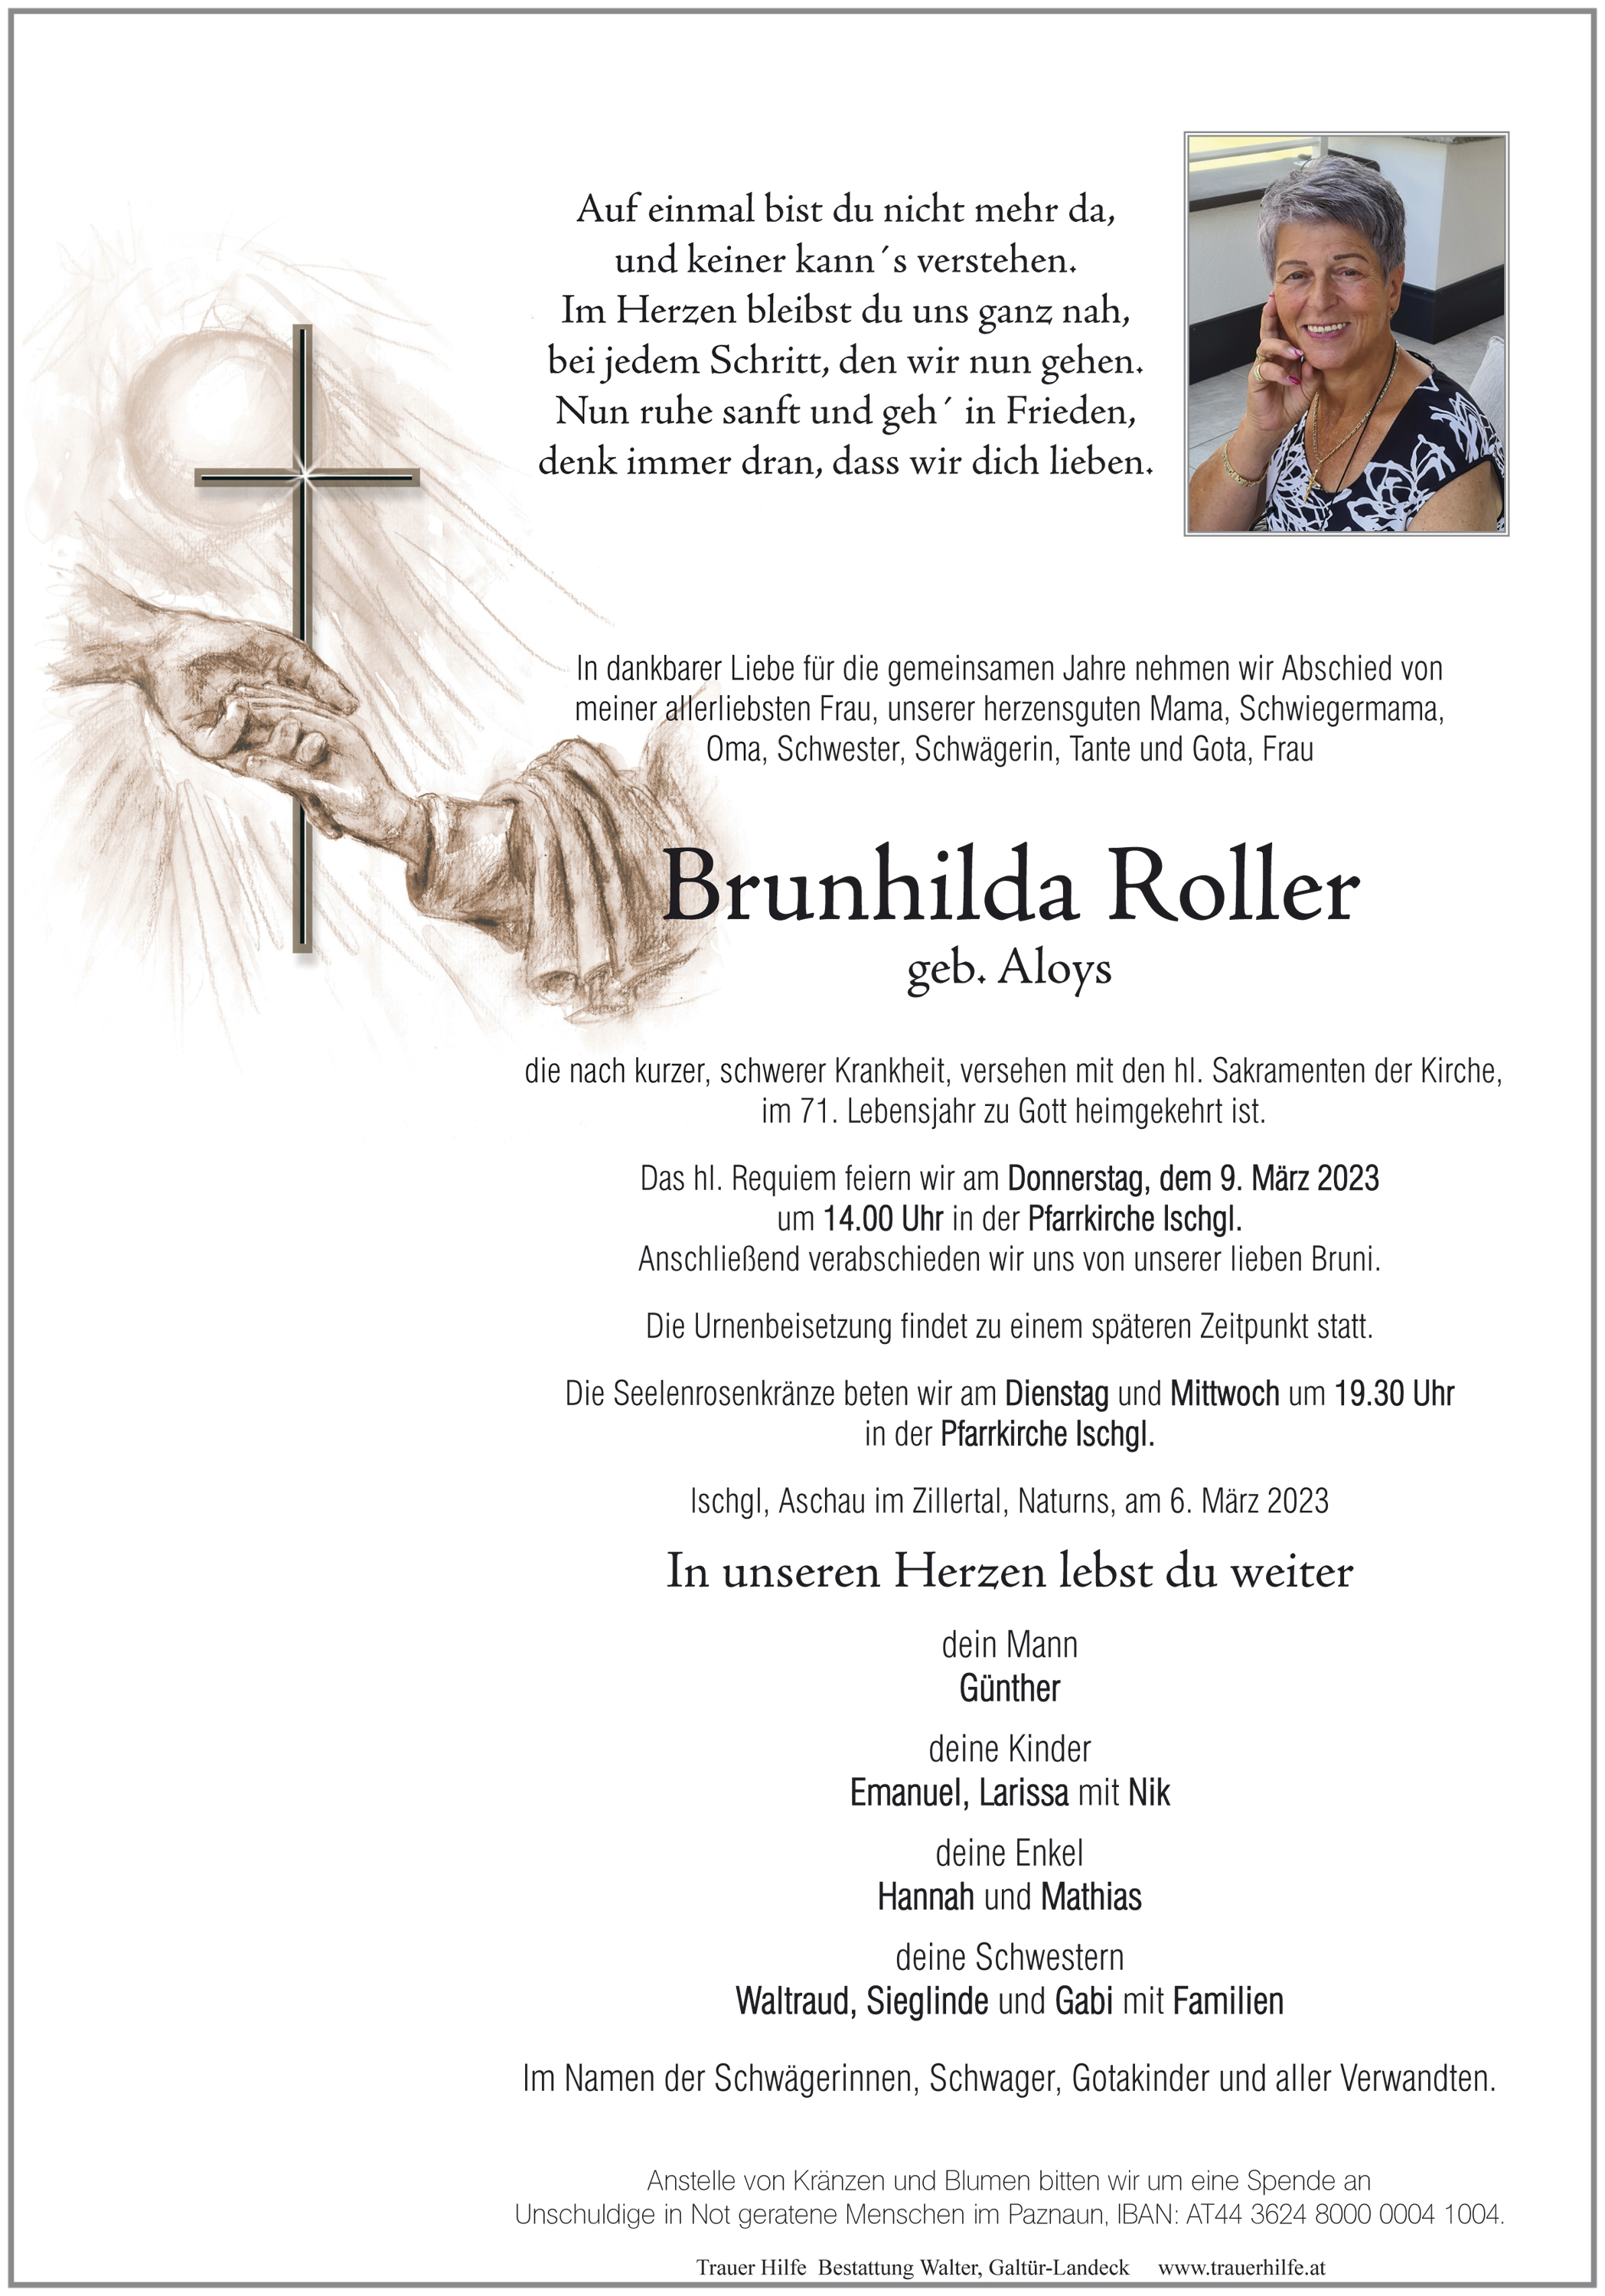 Brunhilda Roller